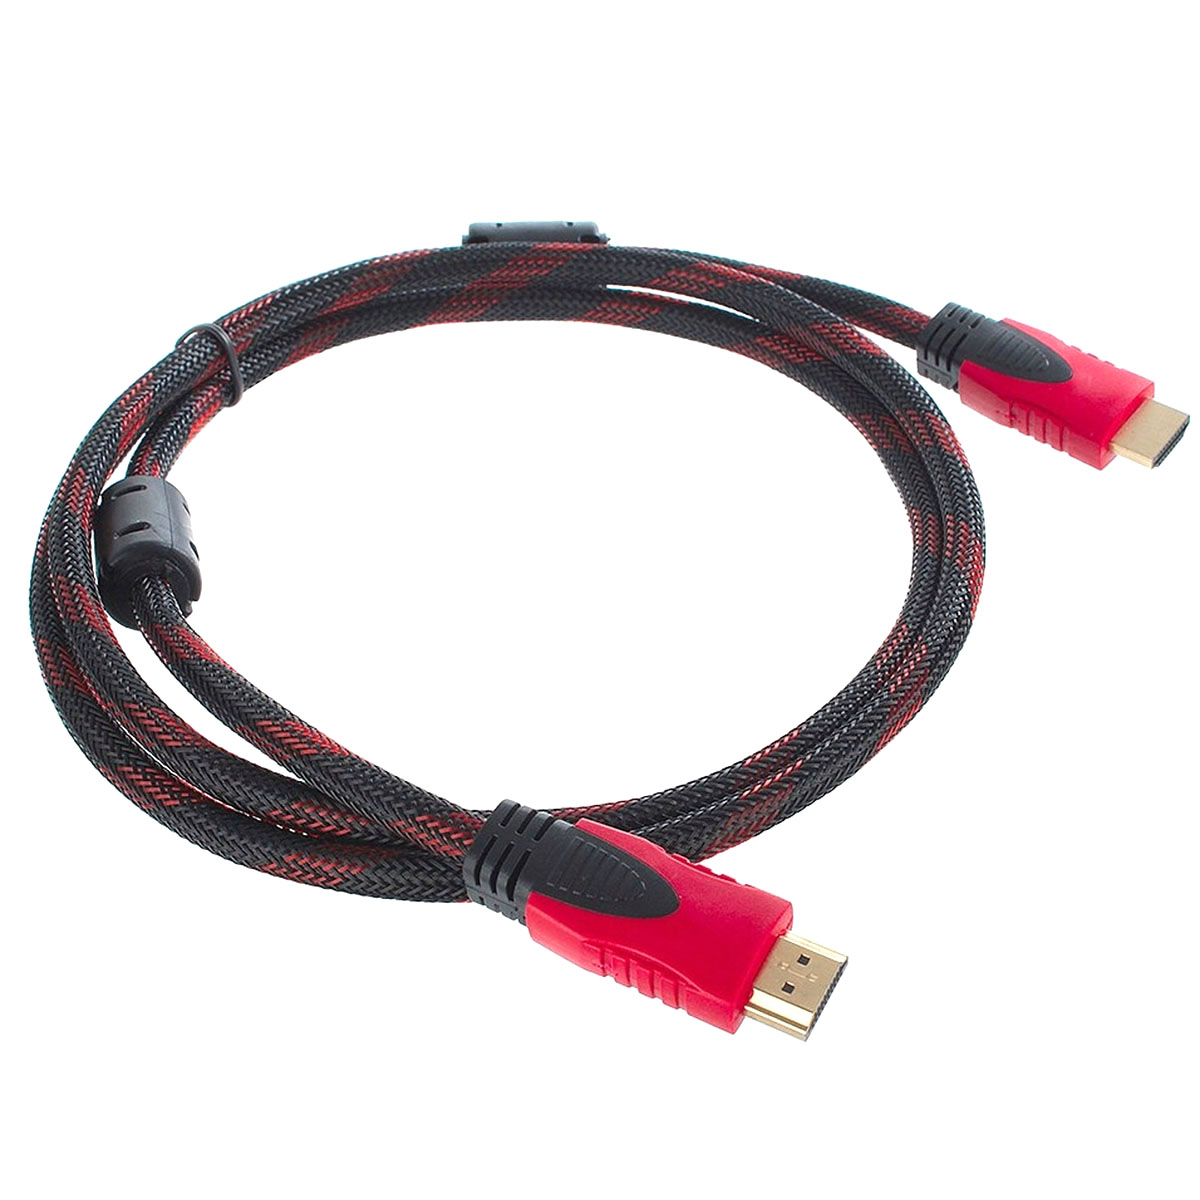 Кабель HDMI - HDMI, длина 1.5 метра, в нейлоновой армированной оплетке, цвет черно красный